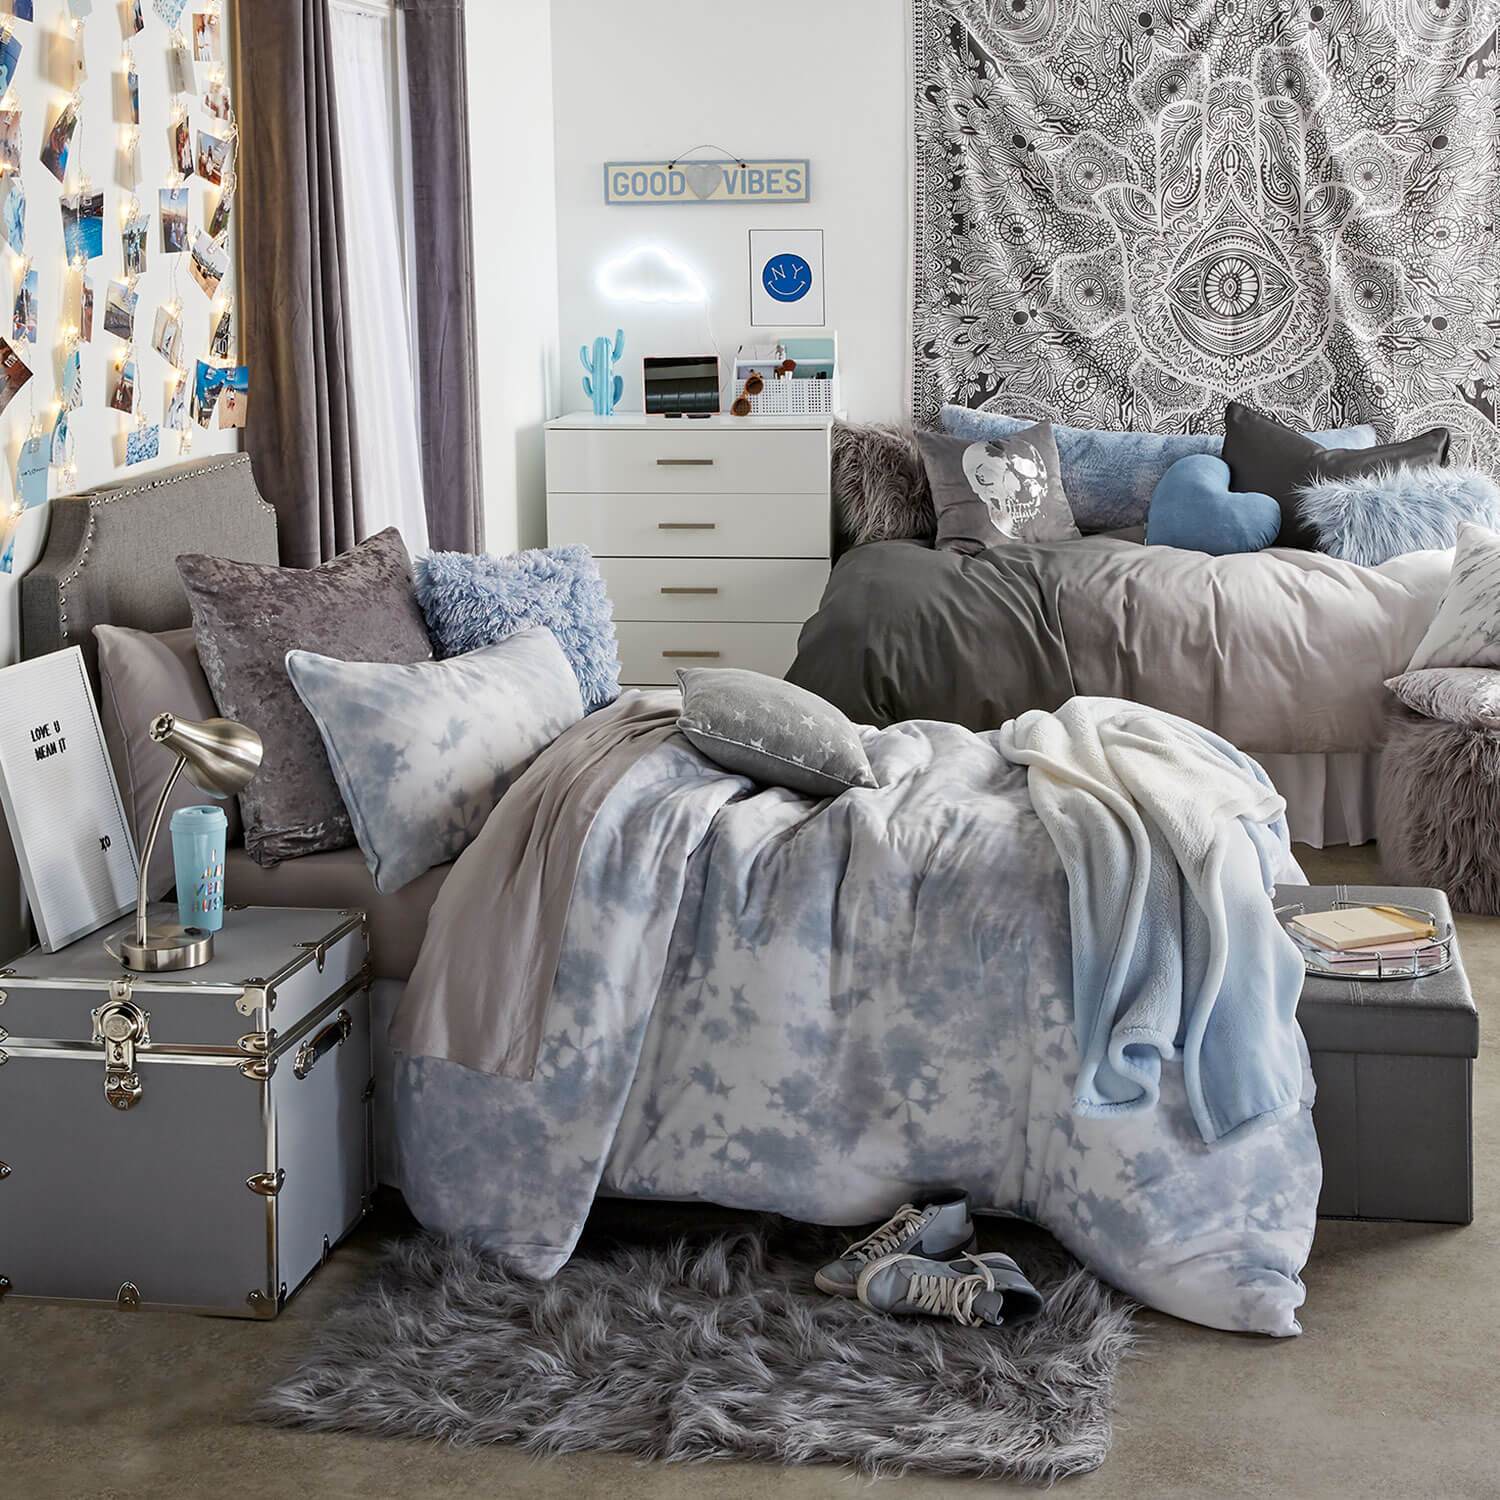 Dorm Room Ideas - College Room Decor - Dorm Inspiration | Dormify